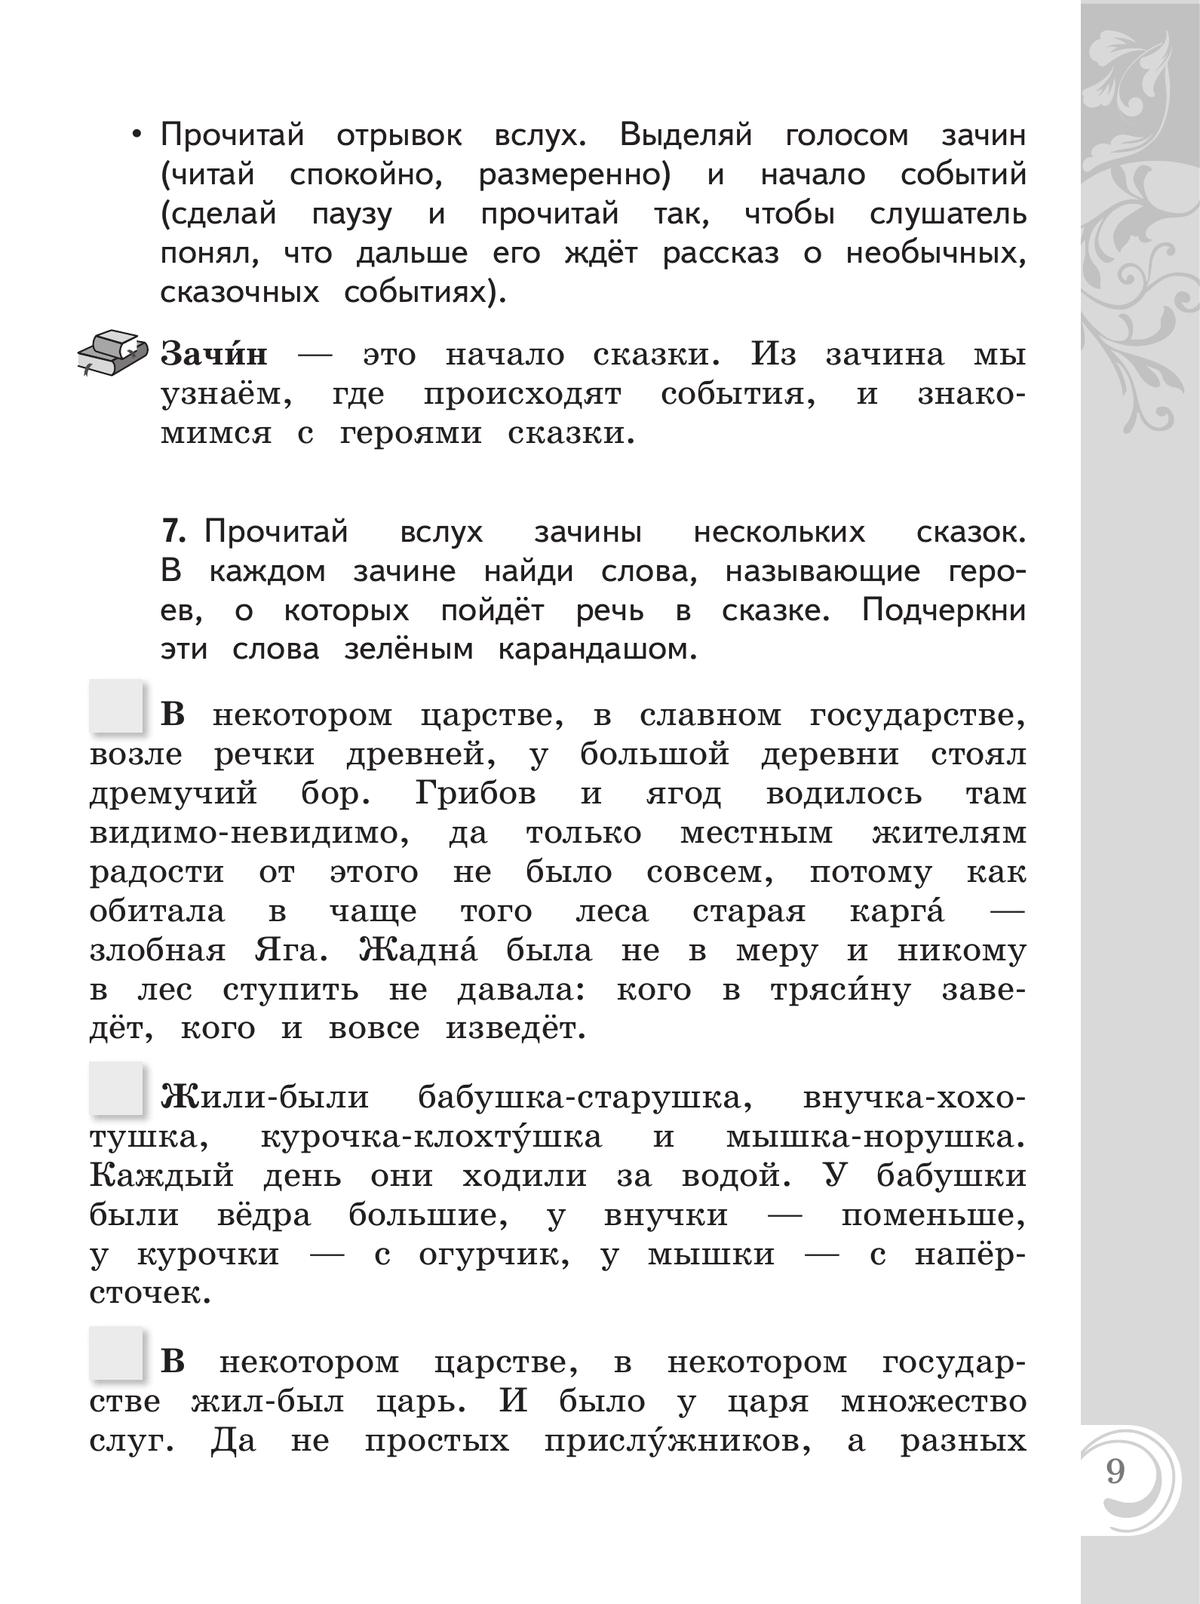 Литературное чтение на русском родном языке. 2 класс. Практикум 9